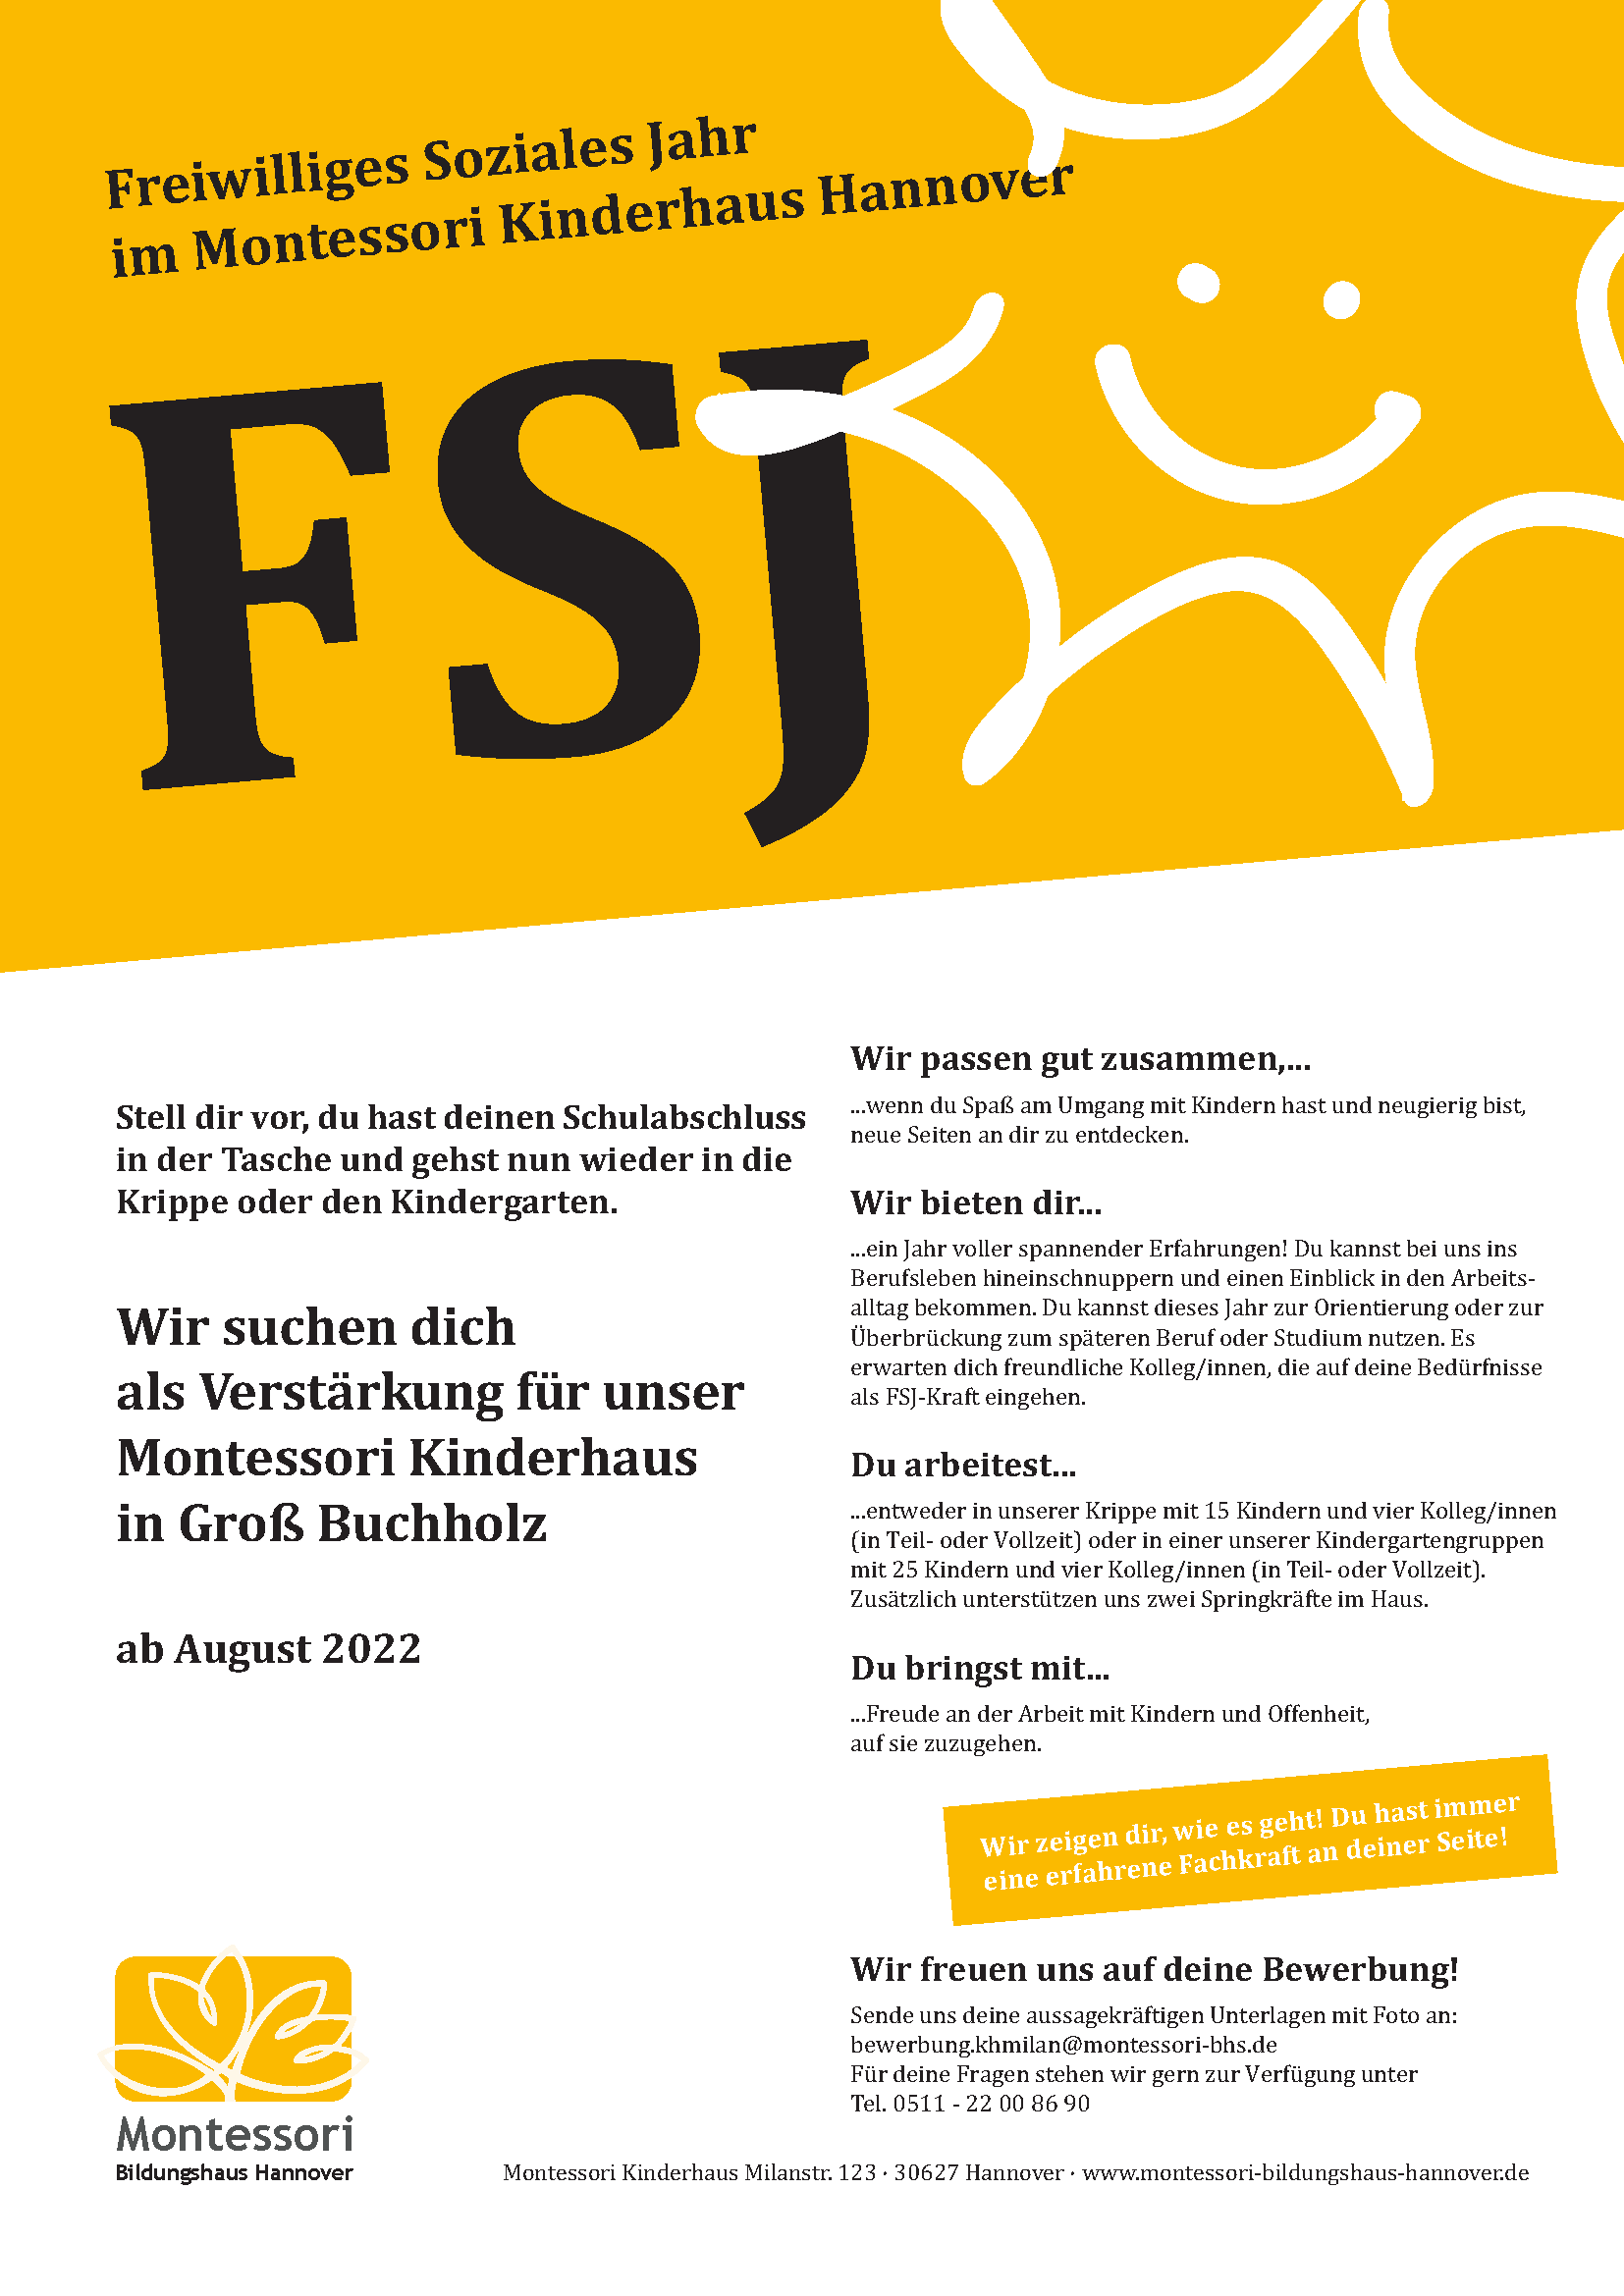 FSJ - Wir suchen dichals Verstärkung für unser Montessori Kinderhaus in Groß Buchholz